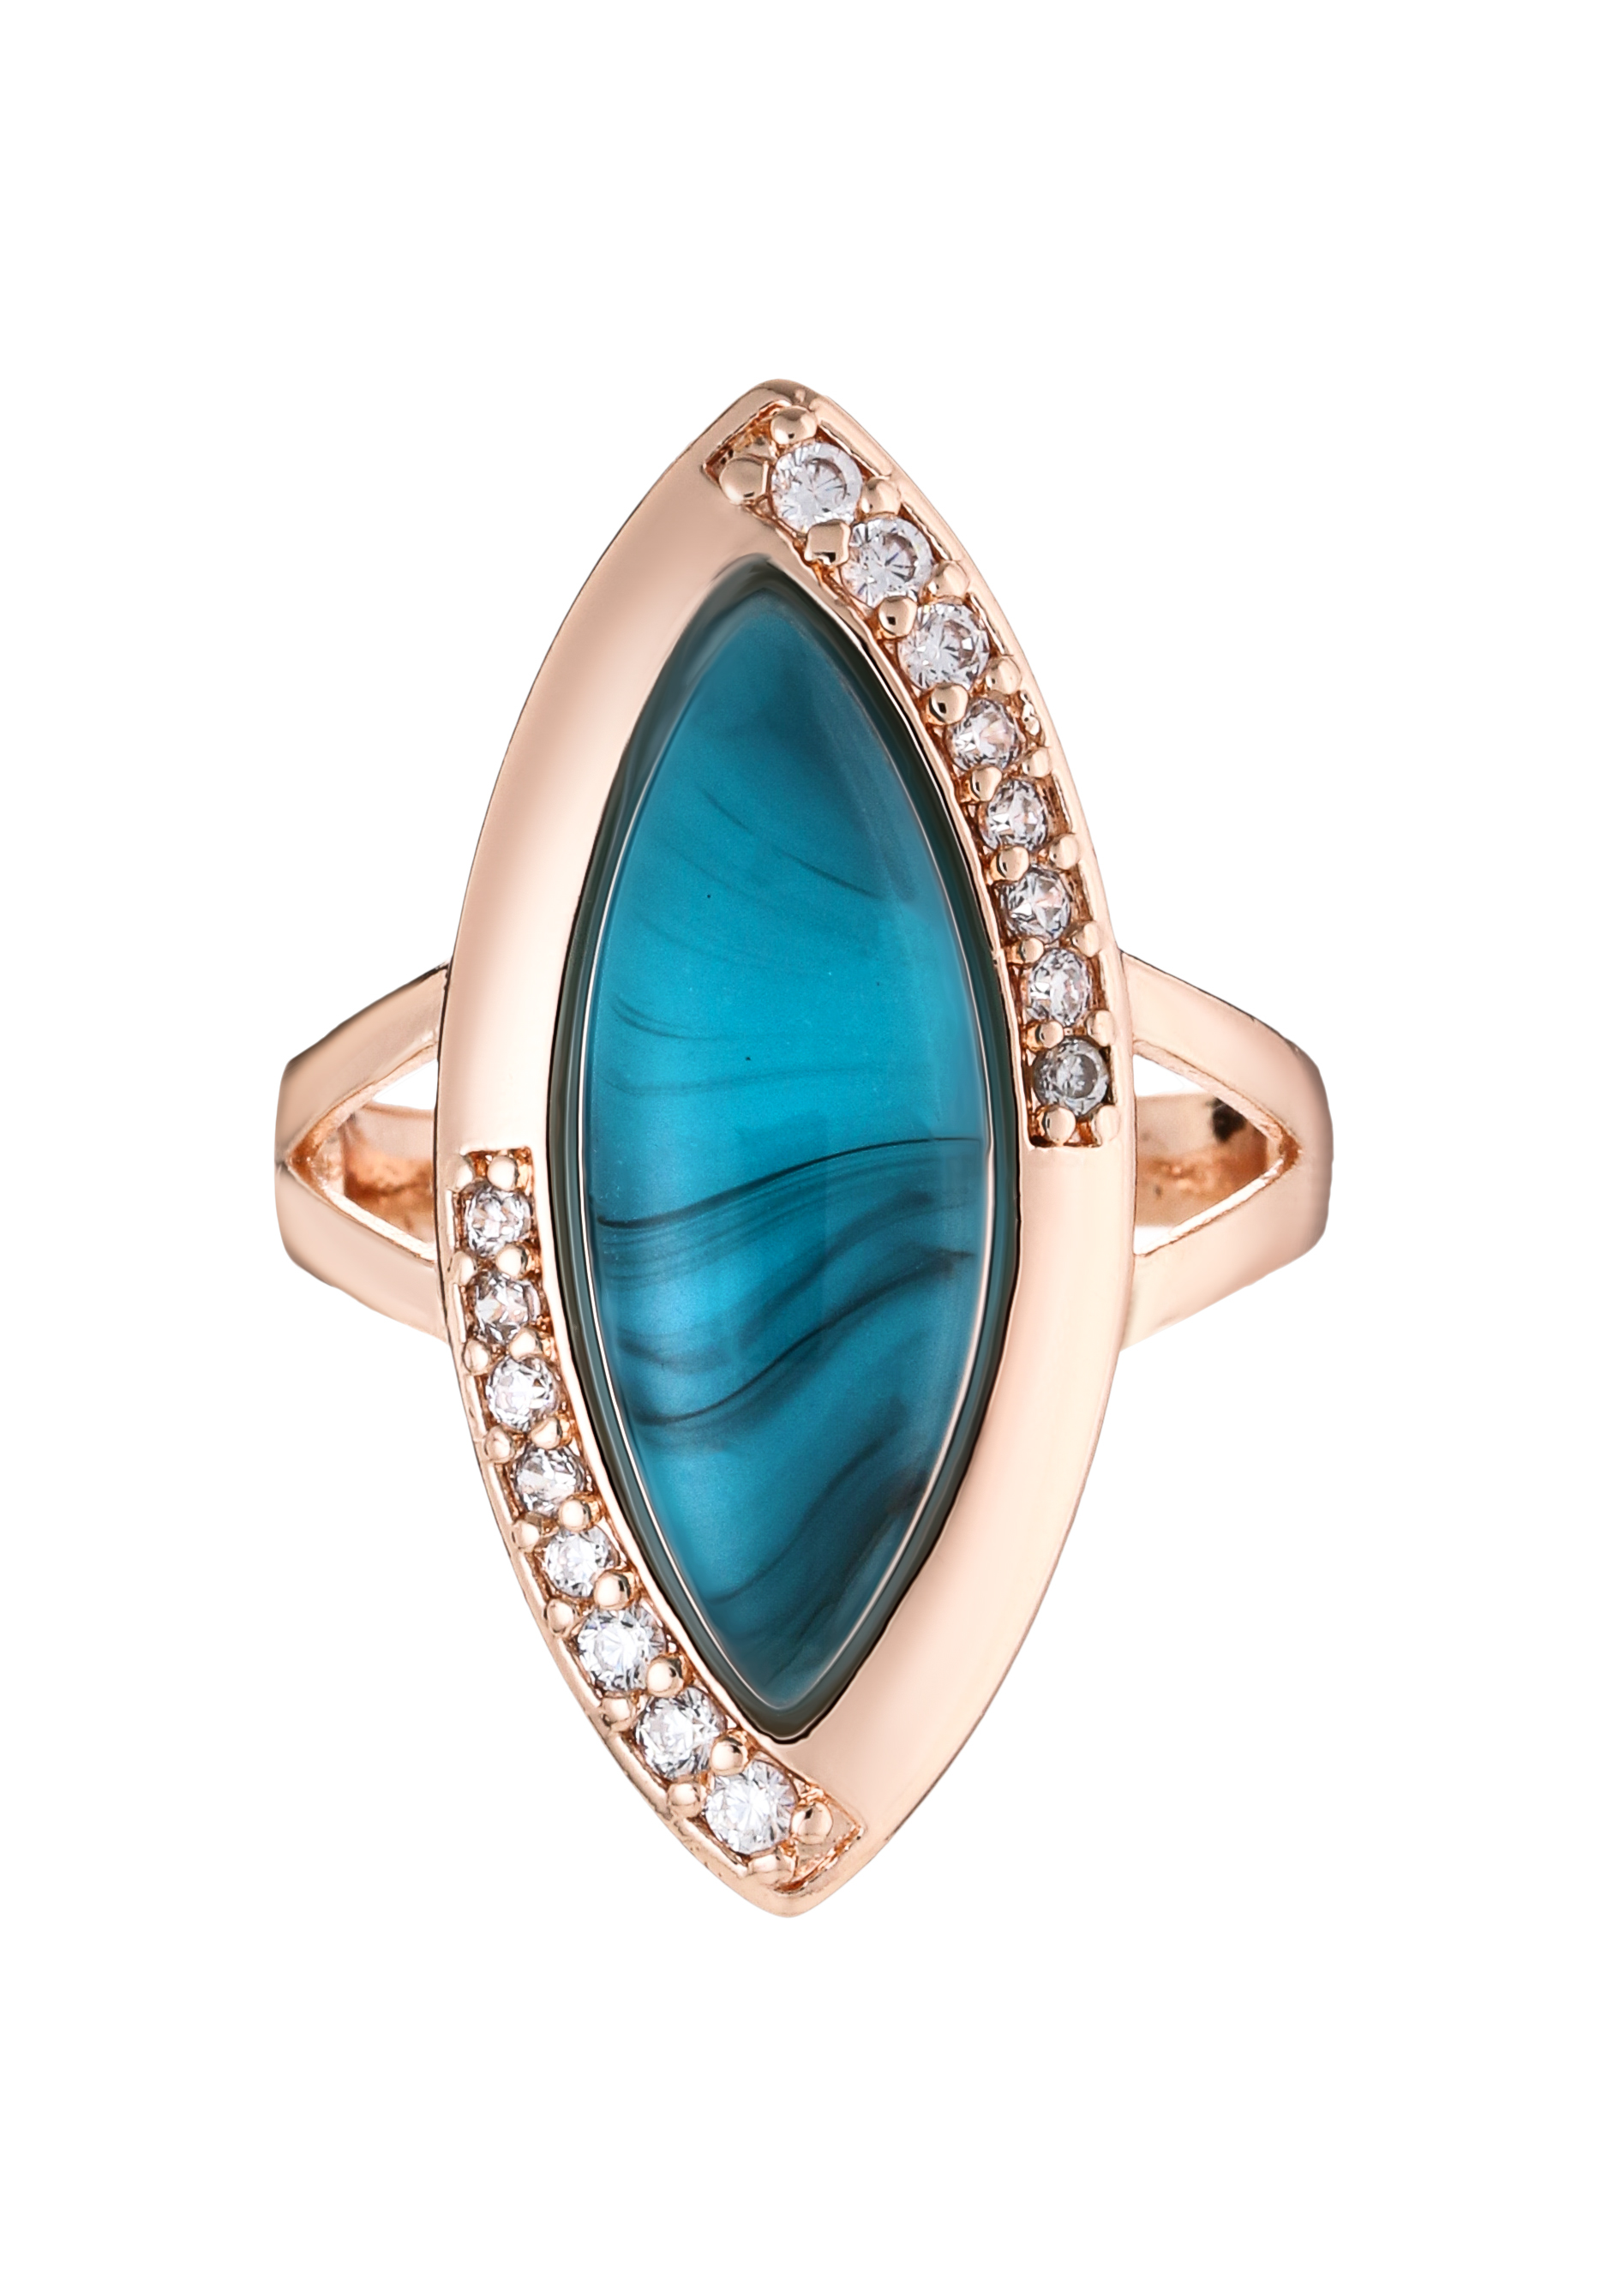 Комплект "Невесомый шлейф" BO.GEMS, цвет голубой, размер 17 перстень - фото 5